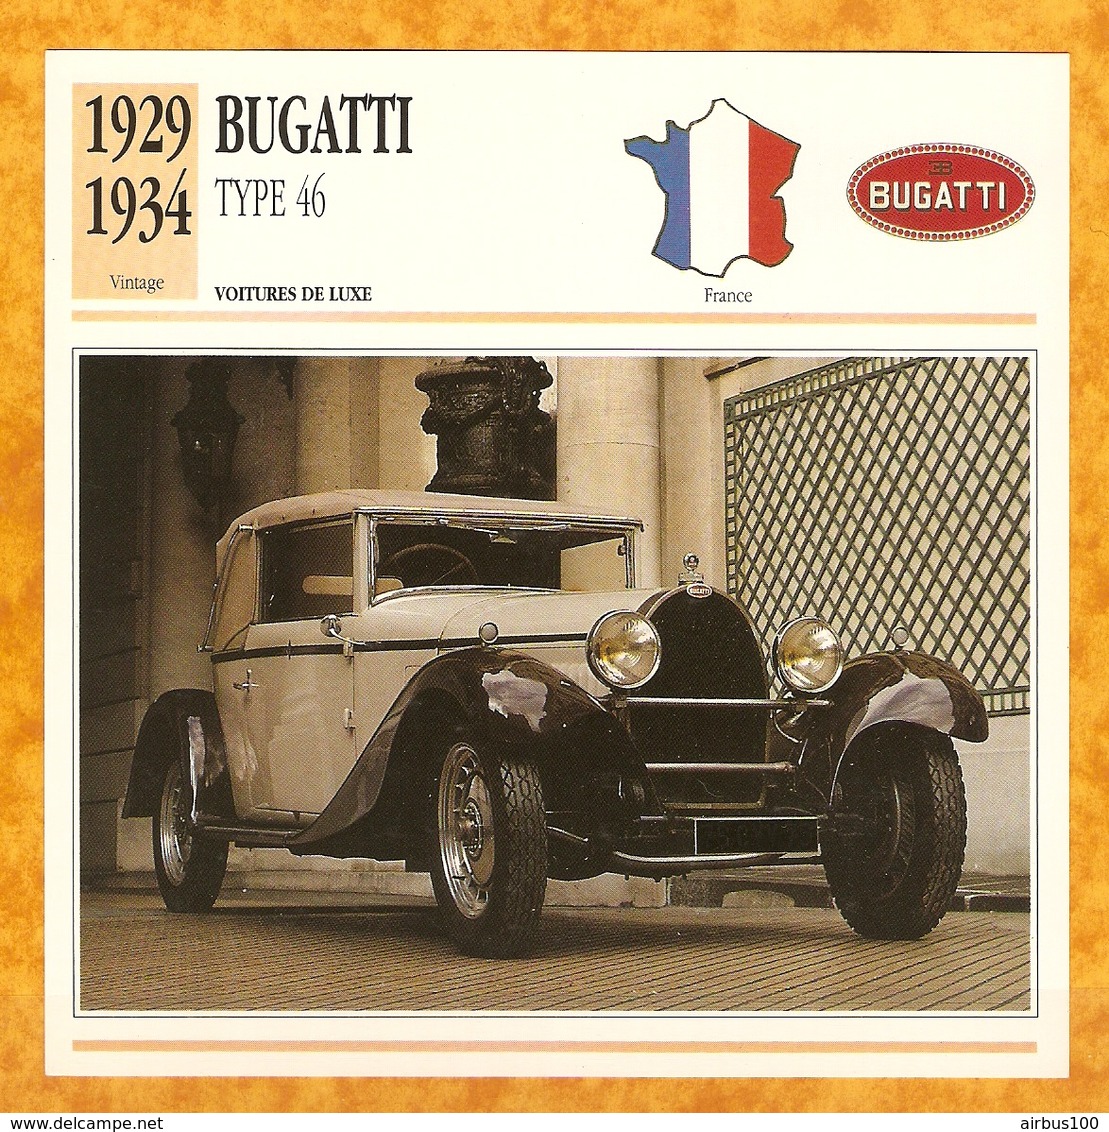 1929 FRANCE VIEILLE VOITURE BUGATTI TYPE 46 - FRANCE OLD CAR - FRANCIA VIEJO COCHE - VECCHIA MACCHINA - Coches